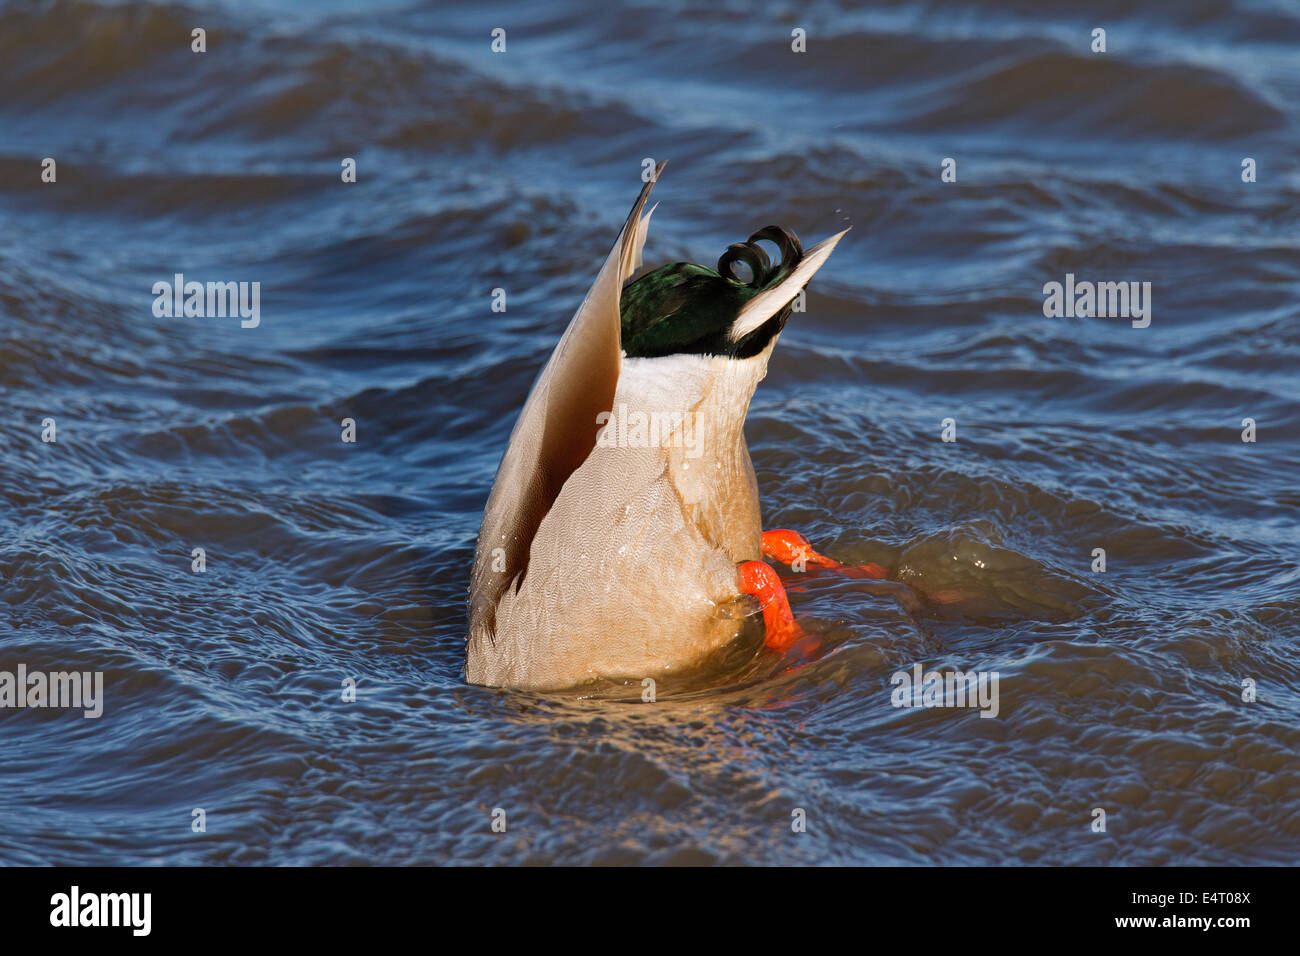 El ánade real (Anas platyrhynchos) upend meterse en el lago para alimentar underwater Foto de stock